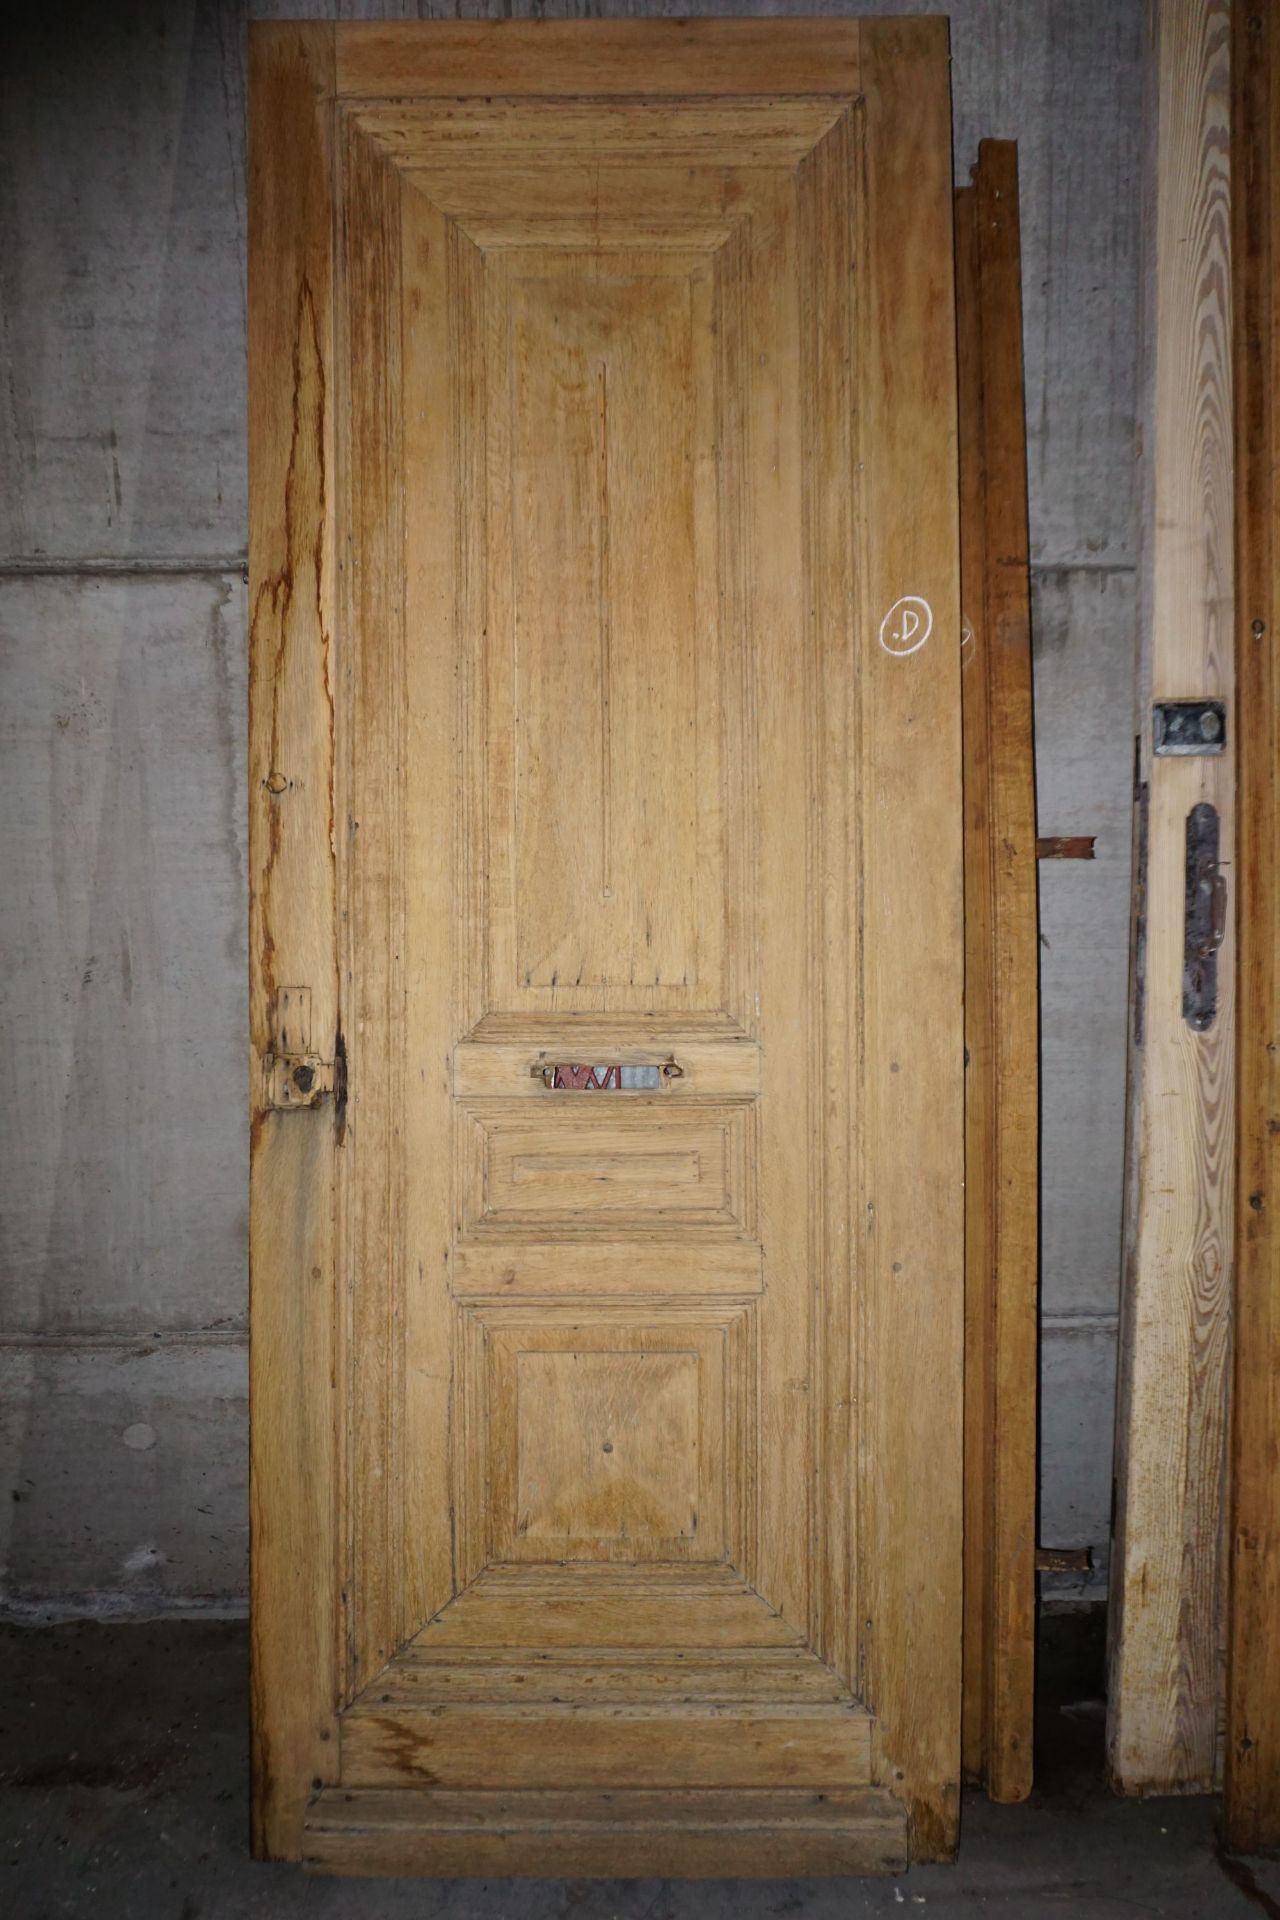 Oak front door-H243x94